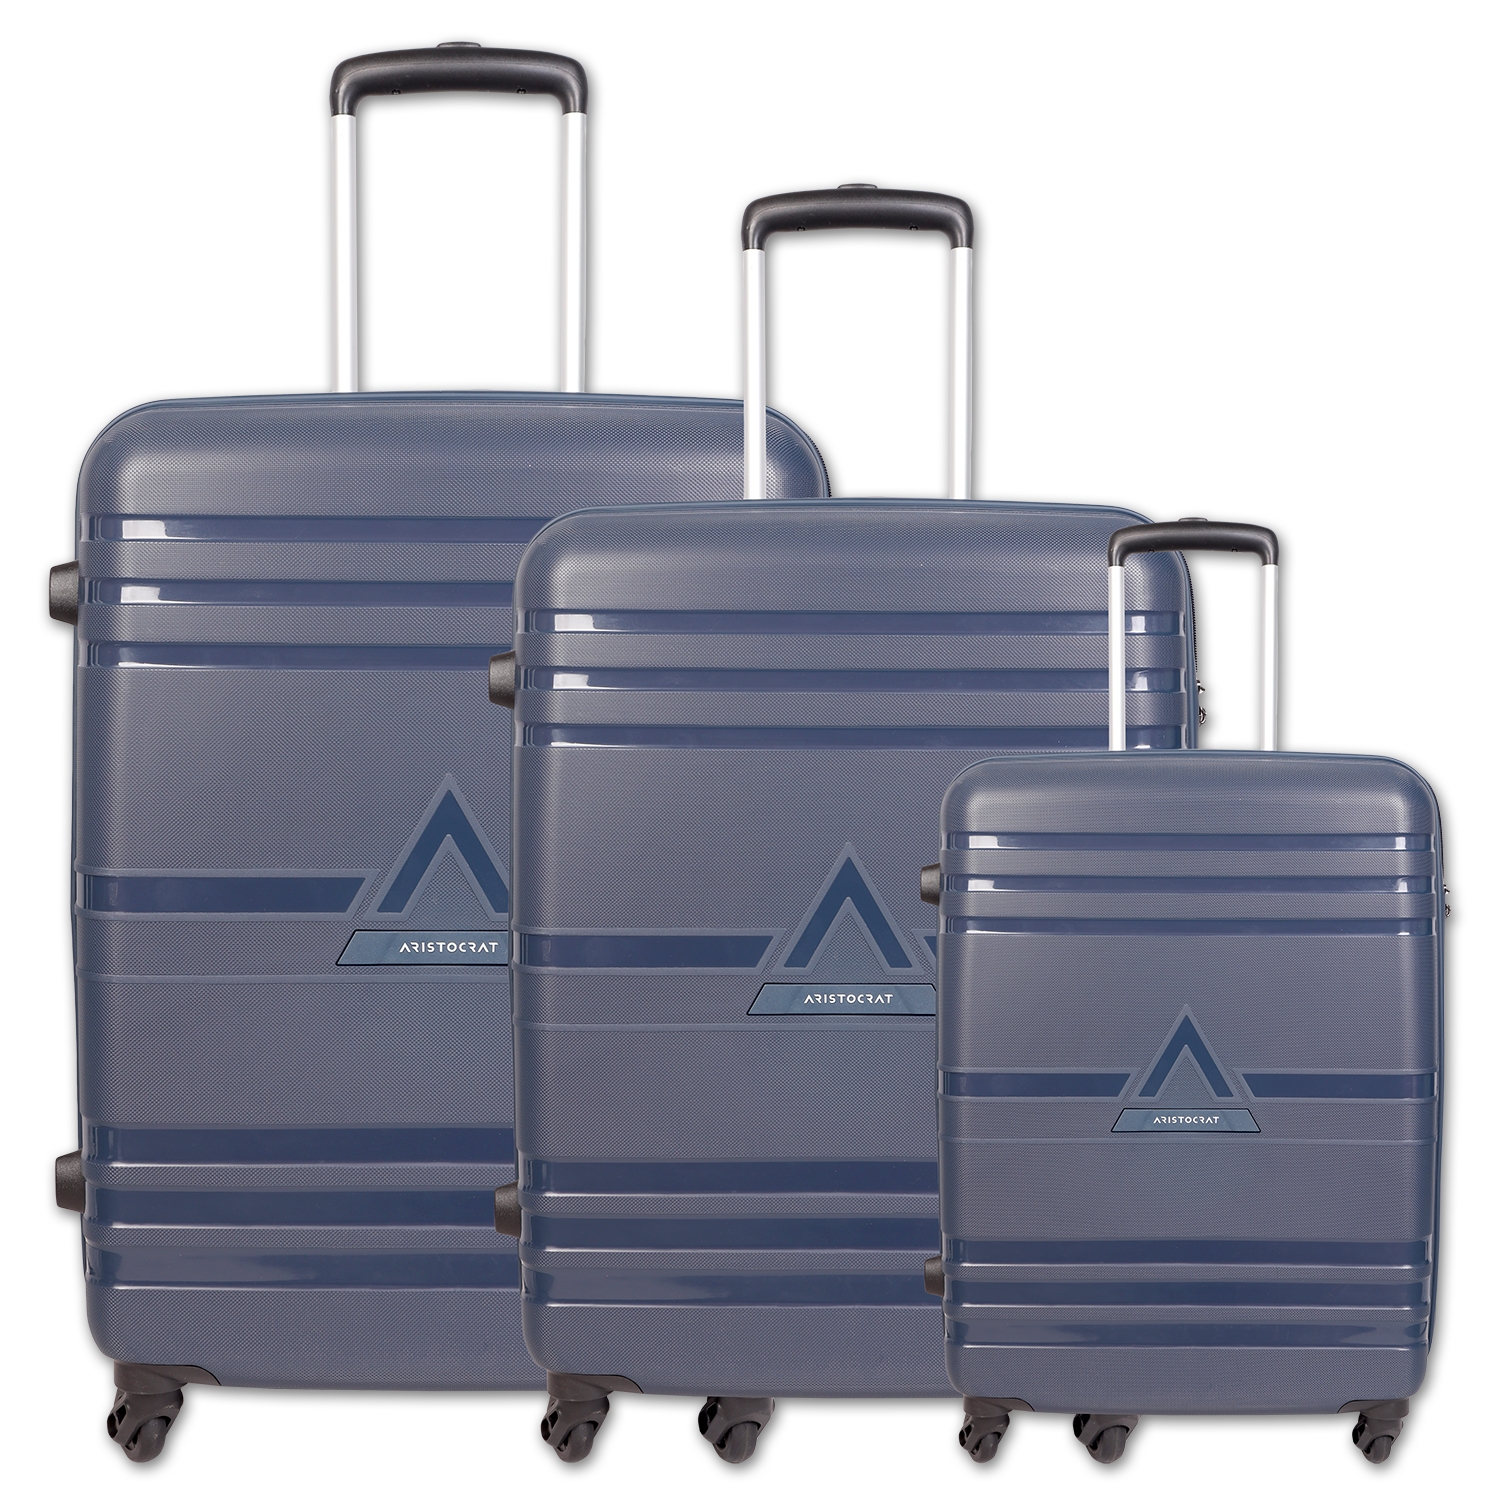 Hard Sided ABS Fiber Luggage Trolley Bag Set at Rs 4600/set | लगेज ट्राली  बैग in Delhi | ID: 23624159273